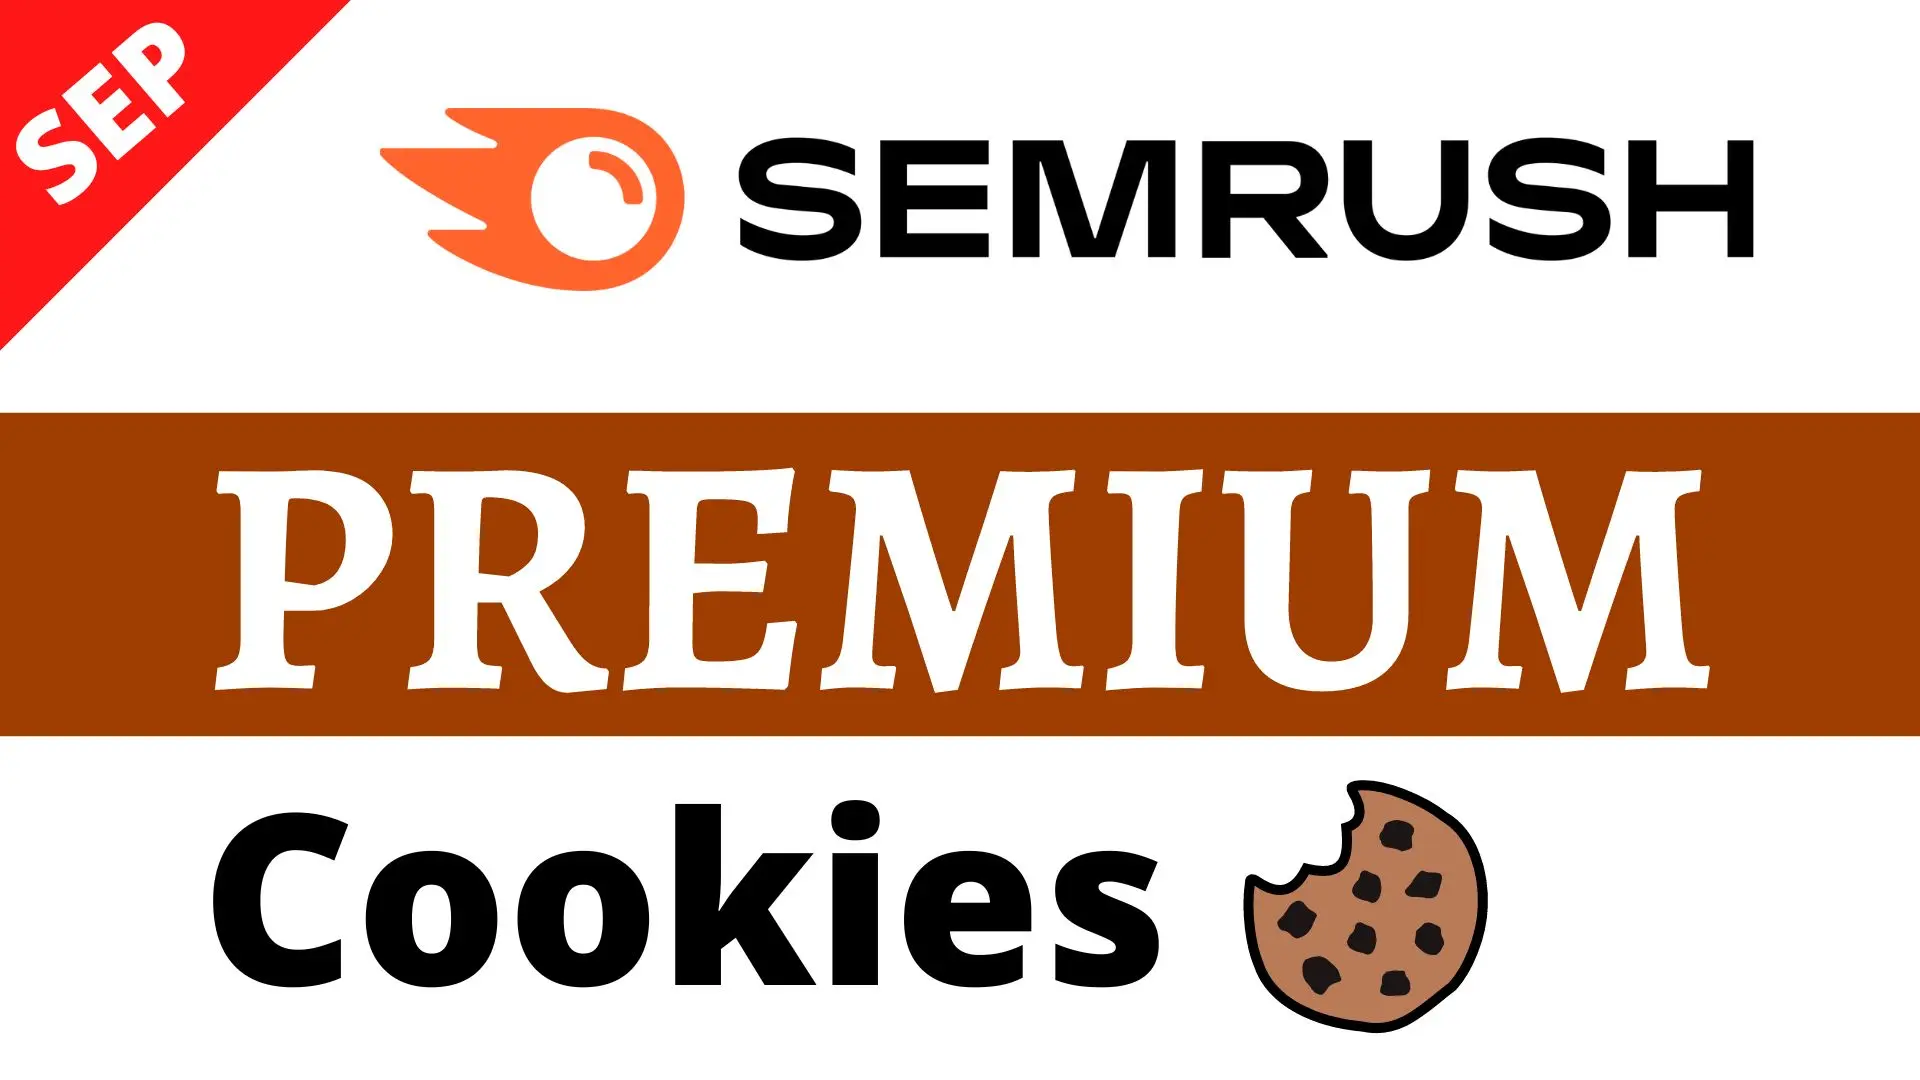 Semrush Premium cookies